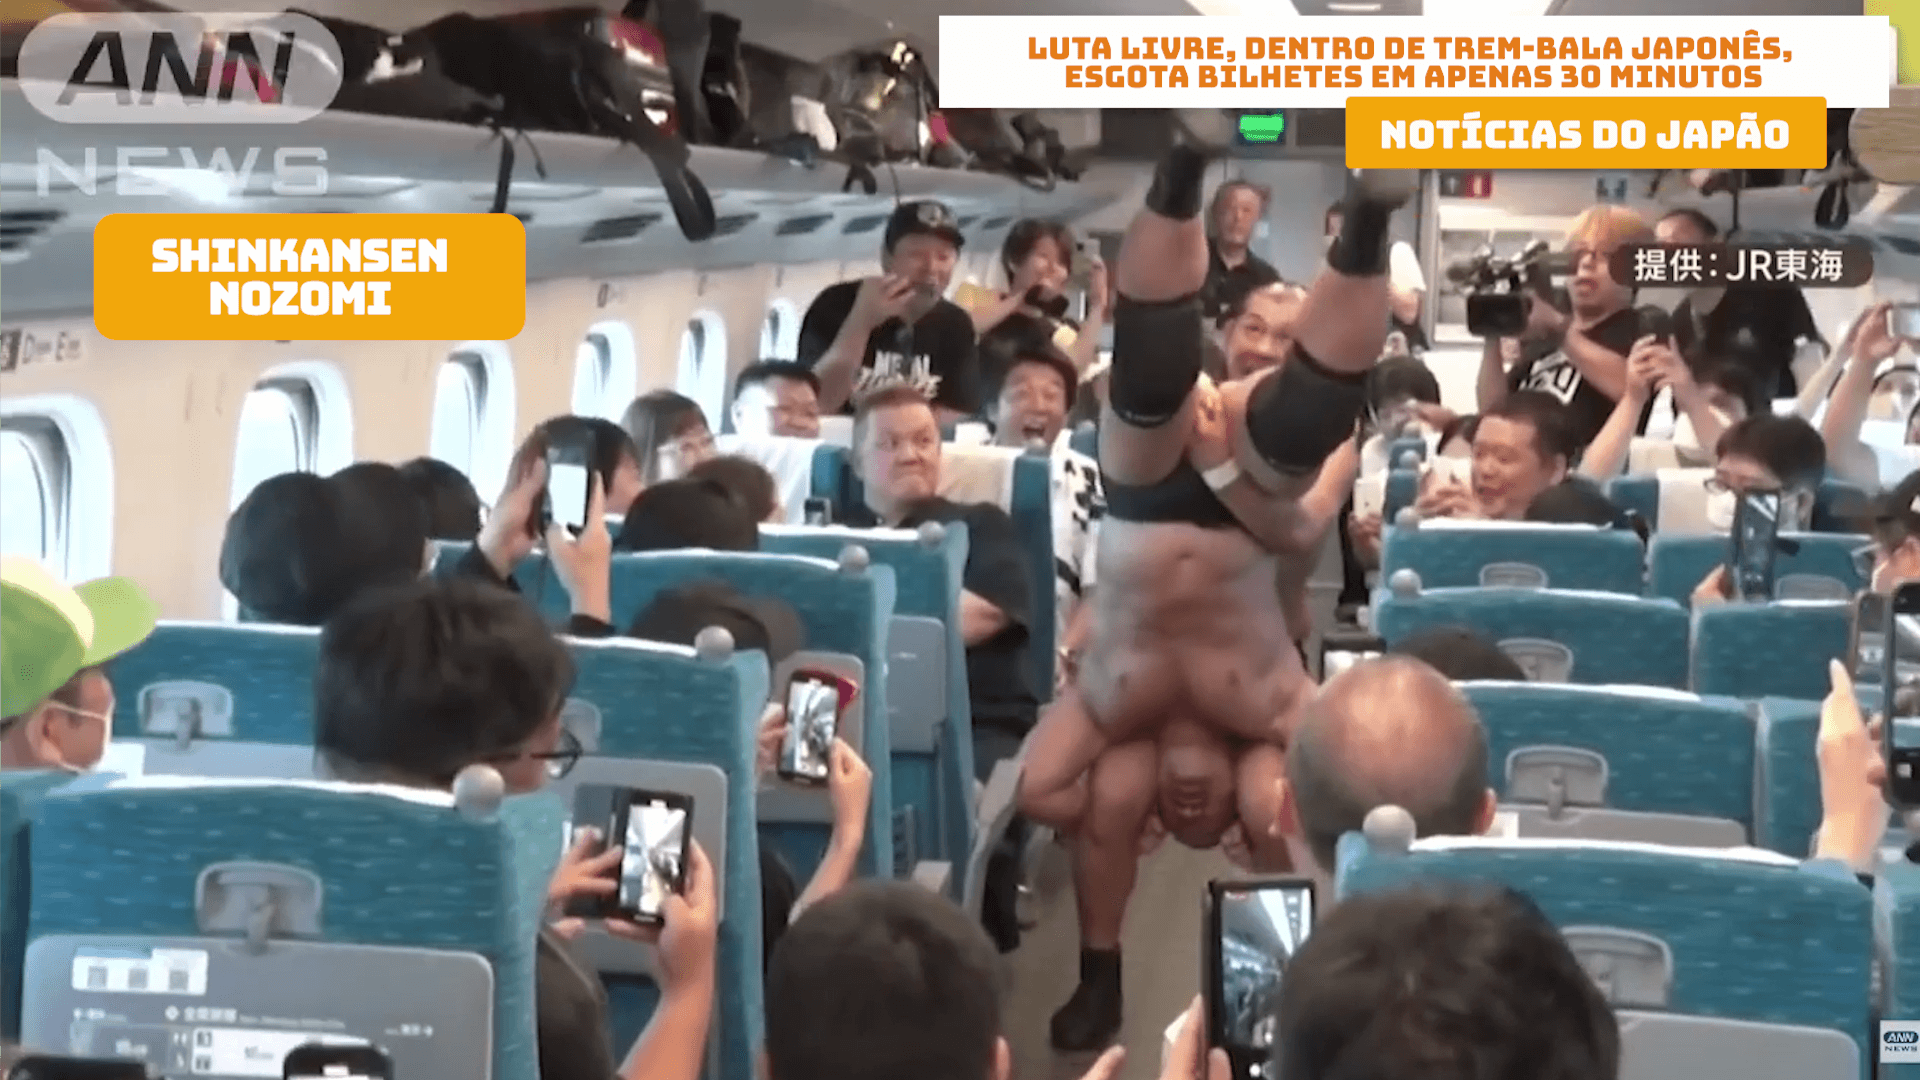 Luta livre, dentro de trem-bala japonês, esgota bilhetes em apenas 30 minutos 